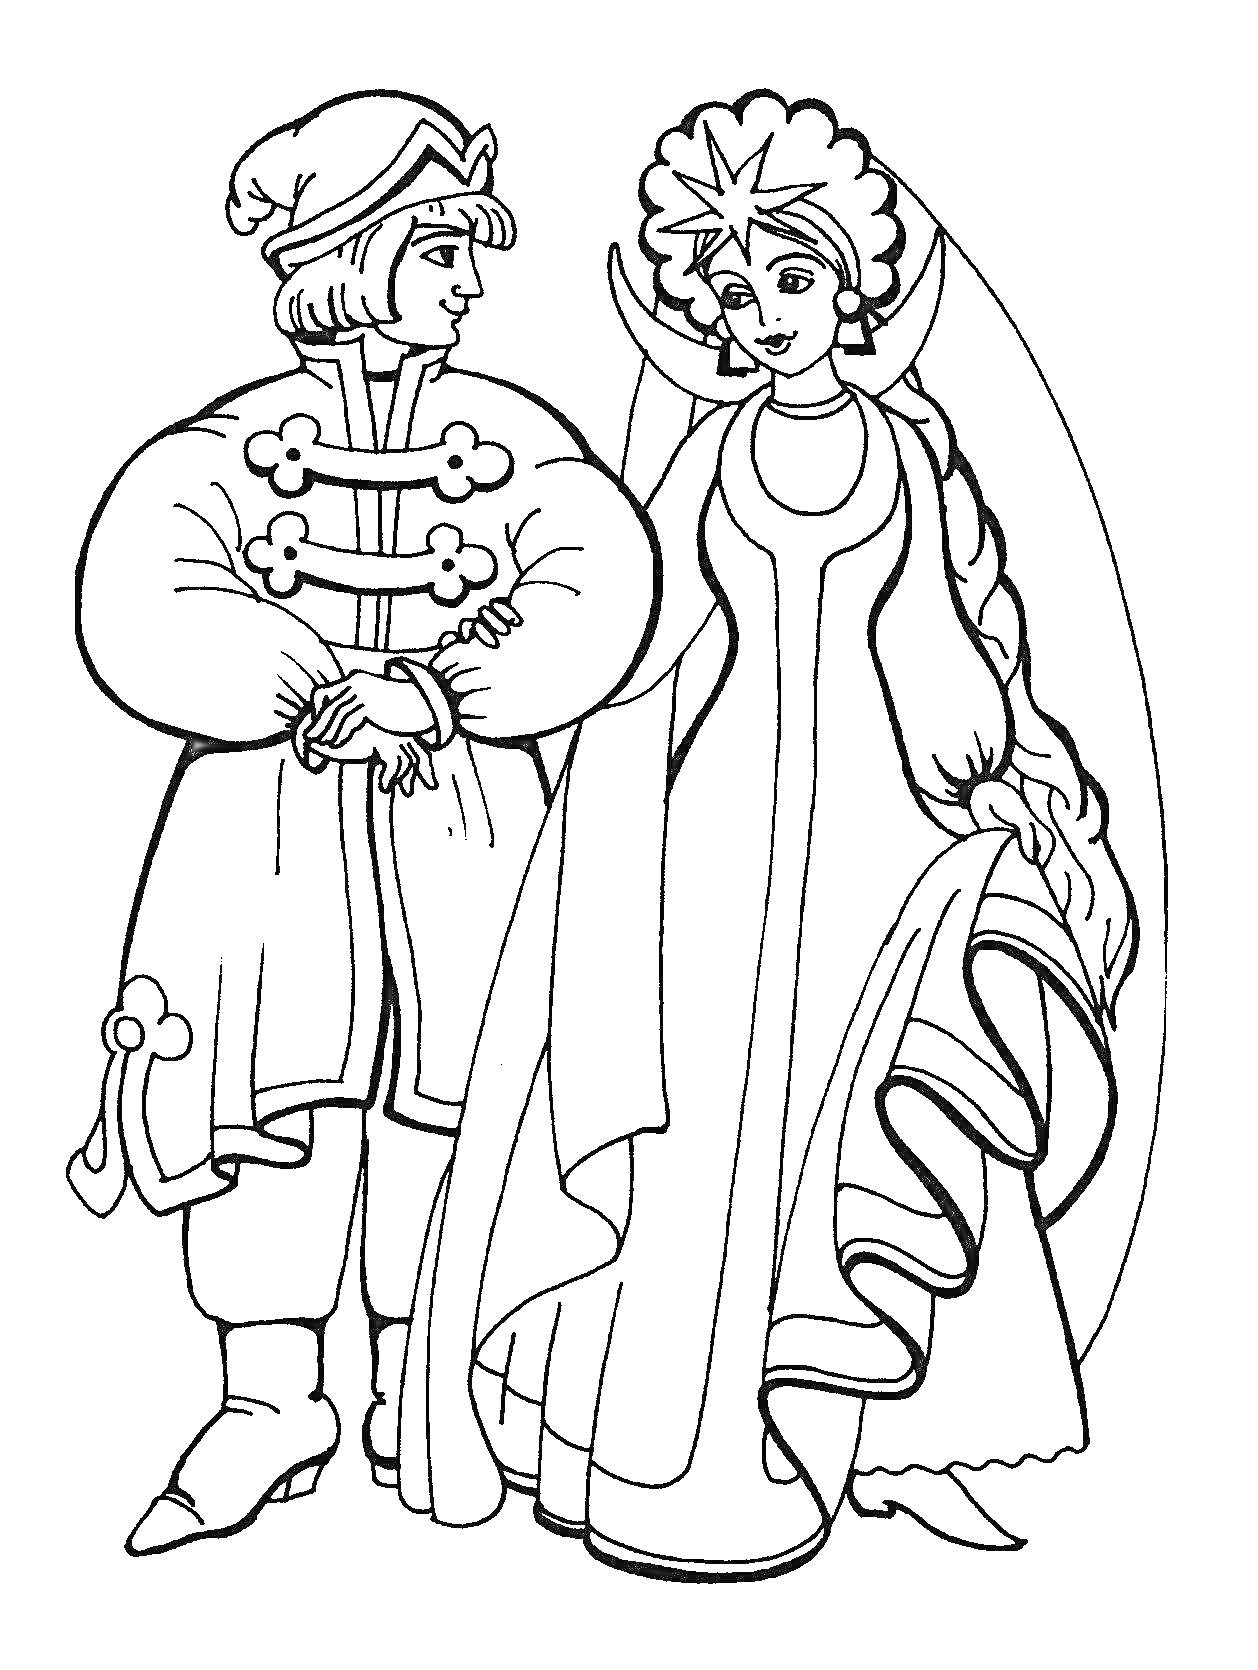 Раскраска Царевна в короне и традиционном платье идет под руку с молодым человеком в традиционной одежде